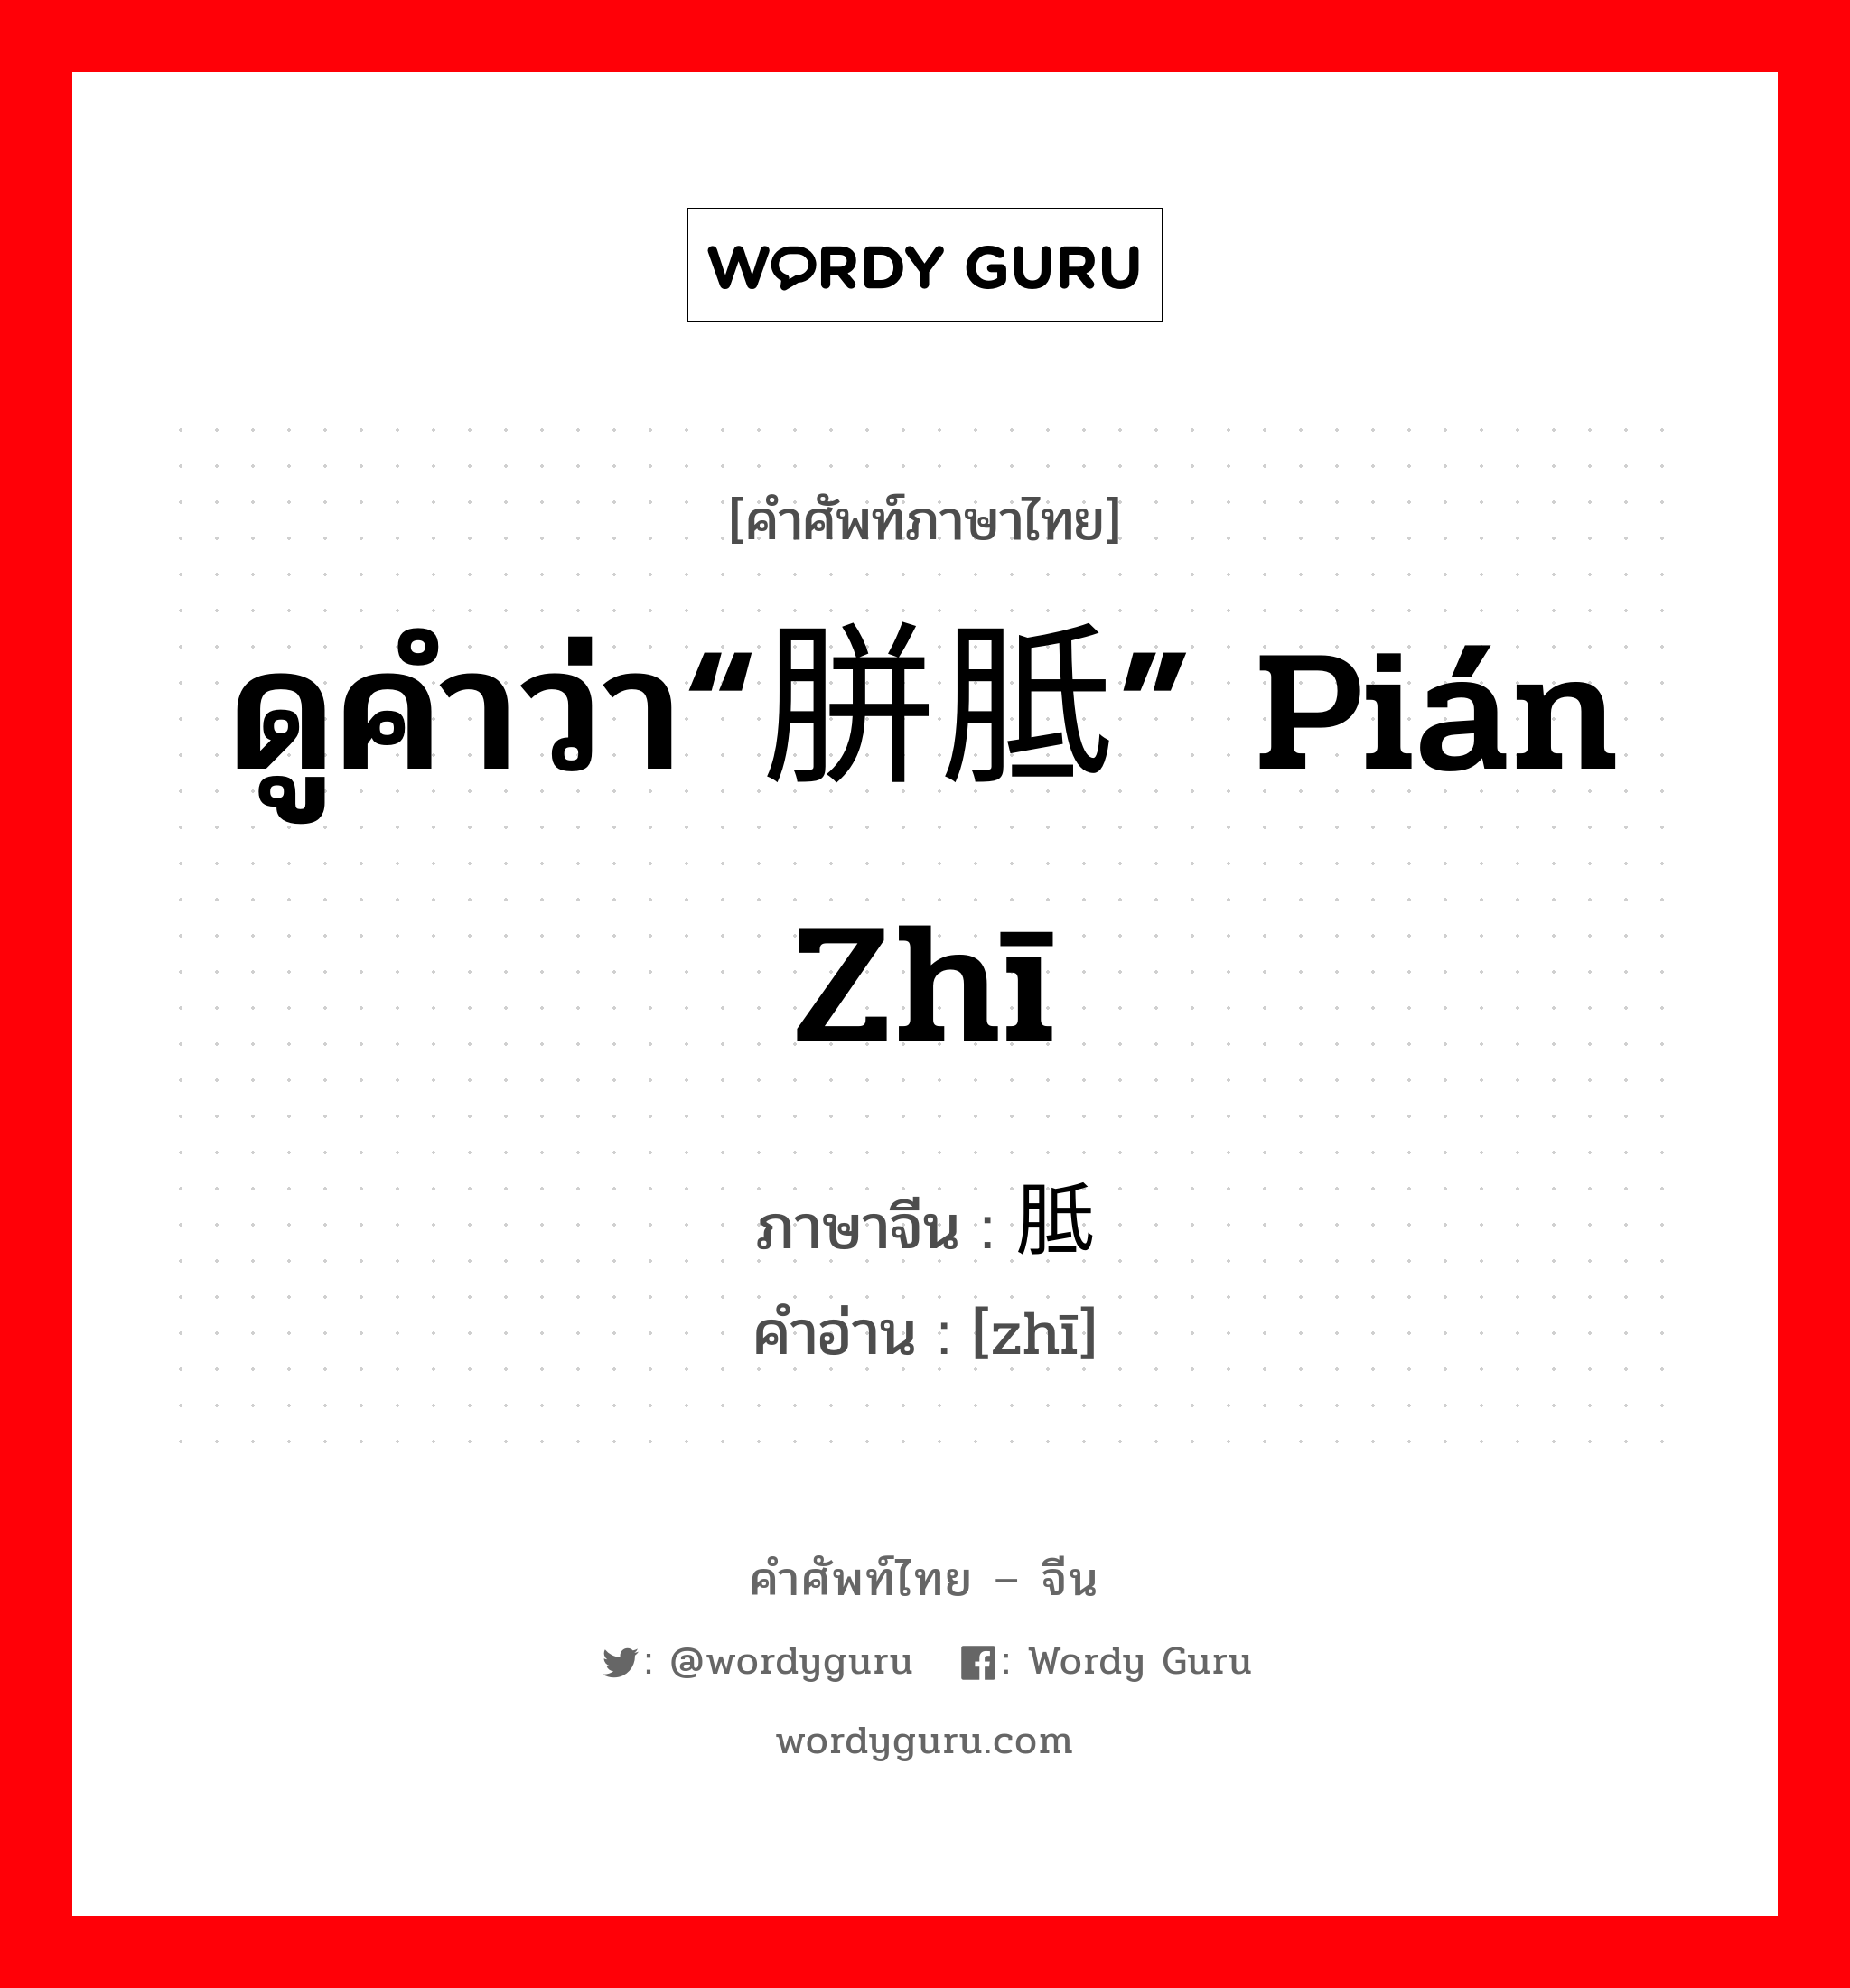 ดูคำว่า“胼胝” pián zhī ภาษาจีนคืออะไร, คำศัพท์ภาษาไทย - จีน ดูคำว่า“胼胝” pián zhī ภาษาจีน 胝 คำอ่าน [zhī]